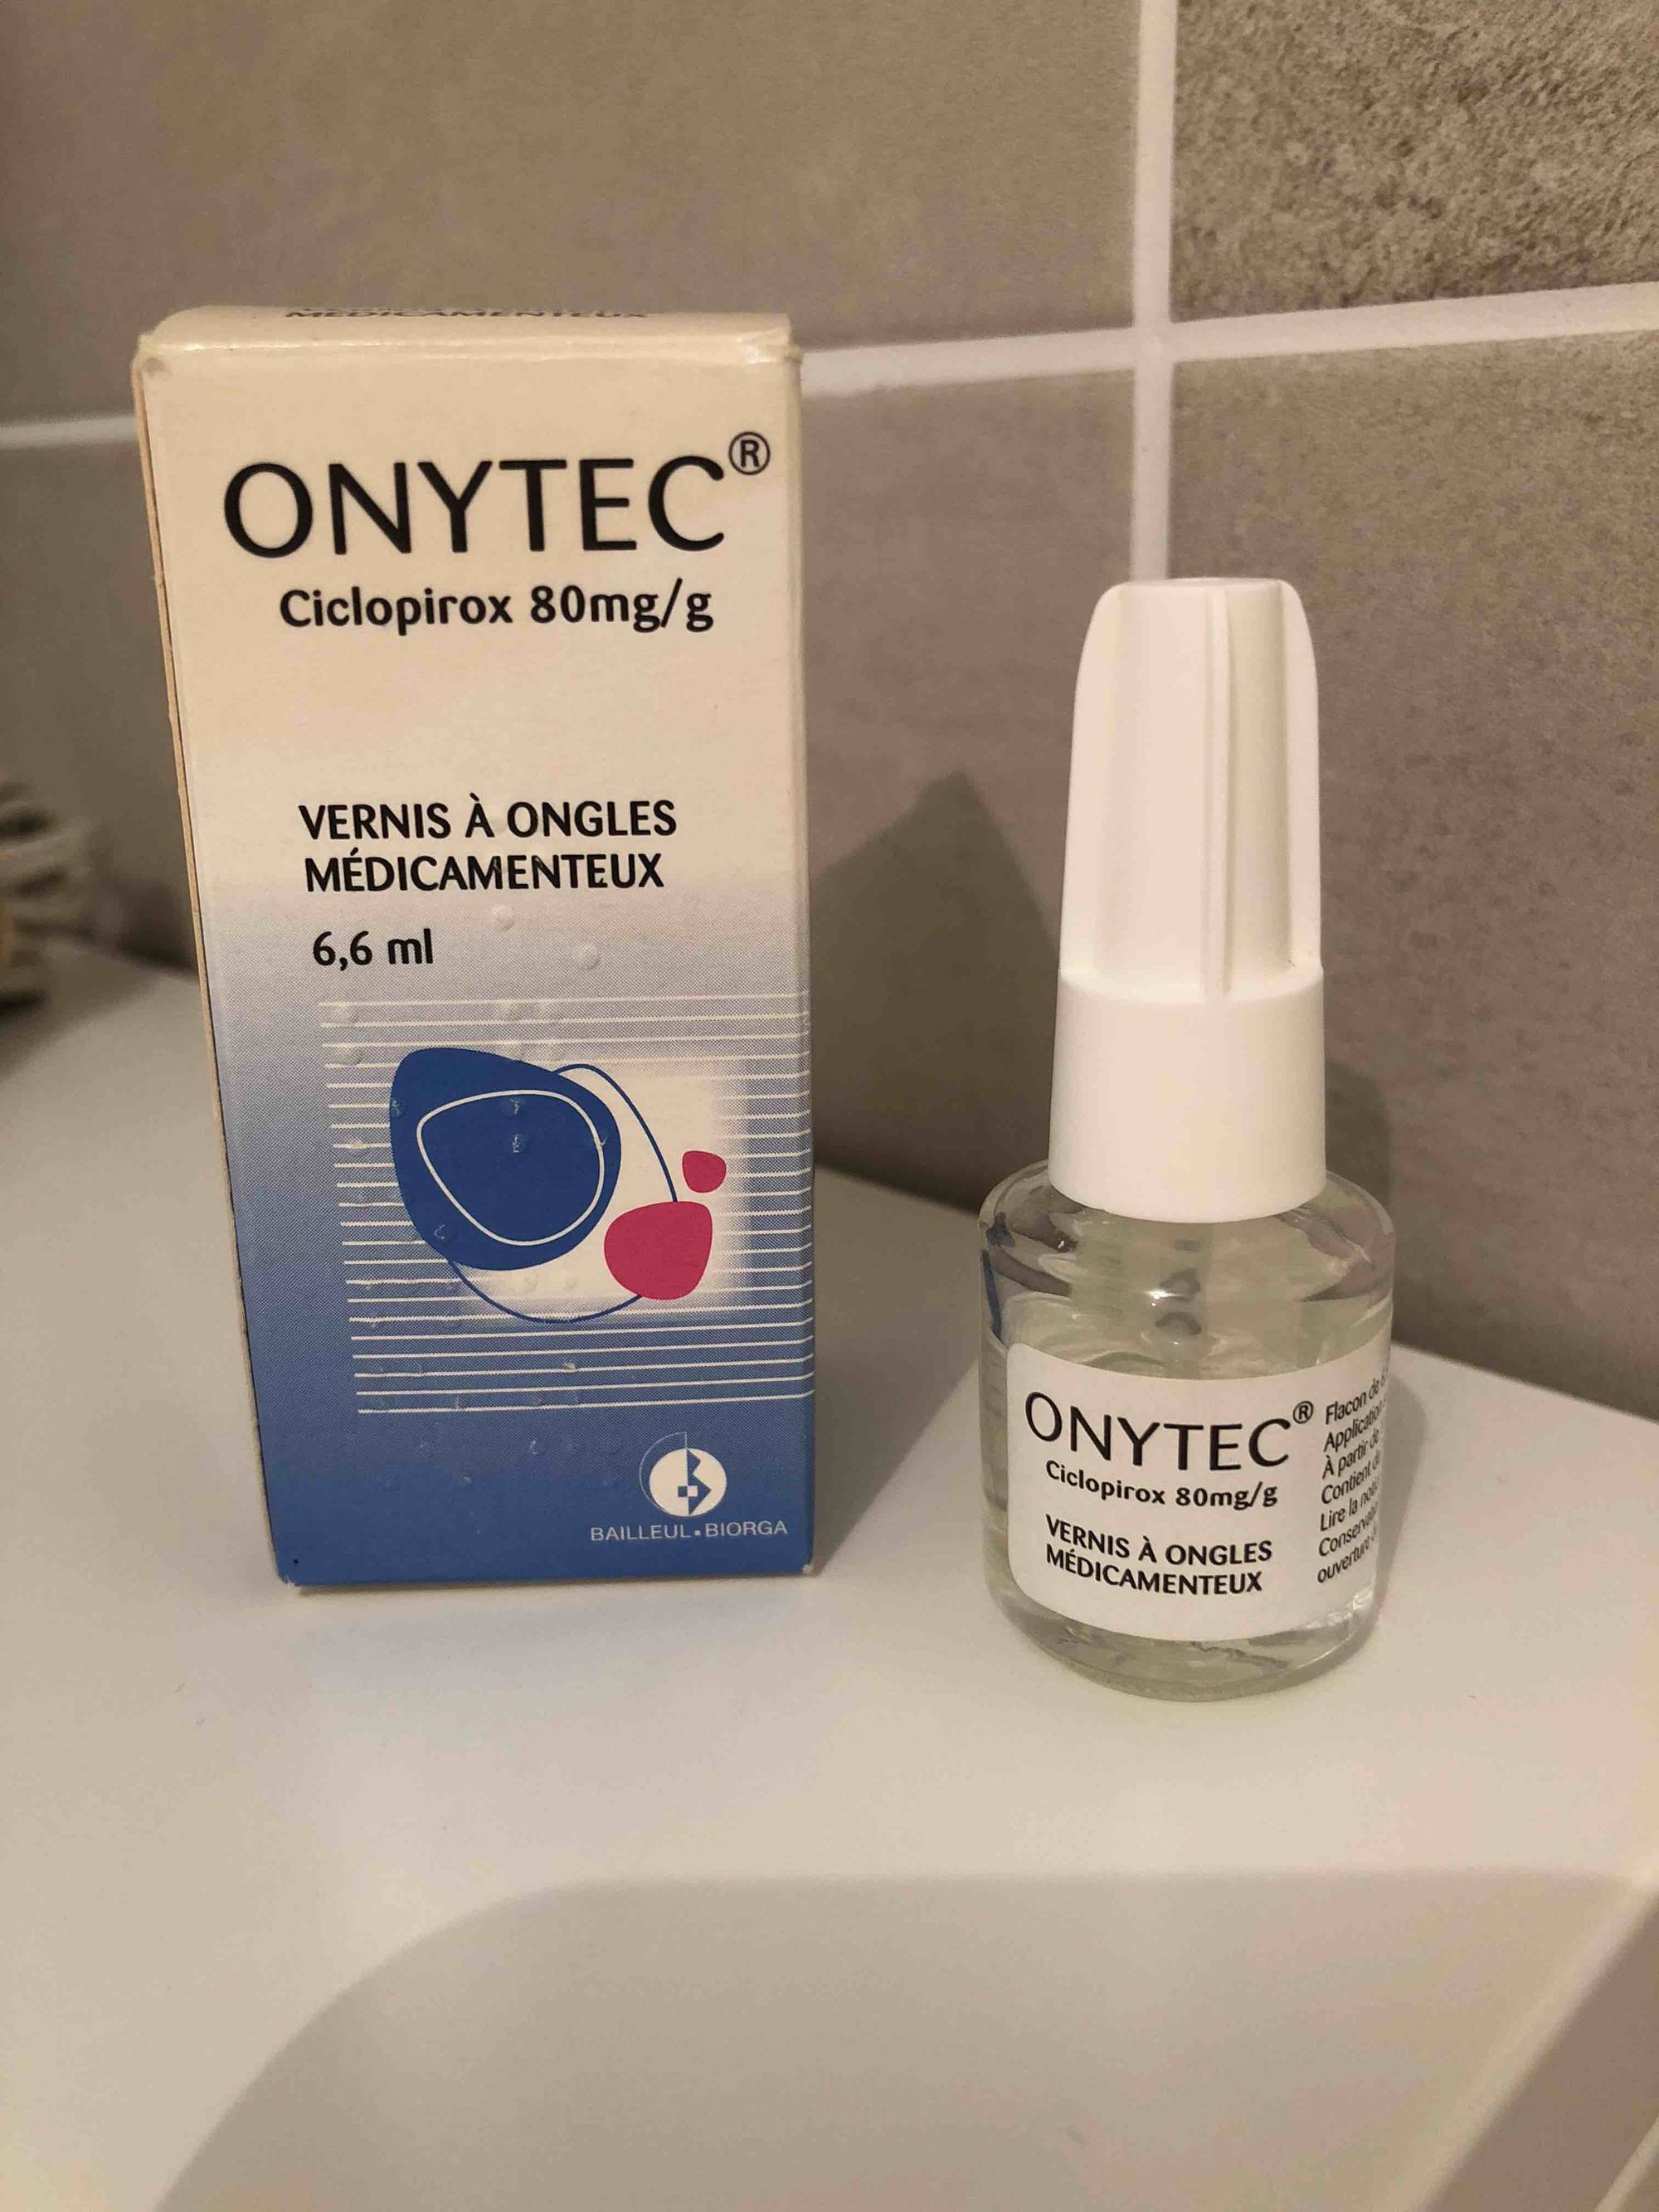 ONYTEC - Vernis à ongles médicamenteux